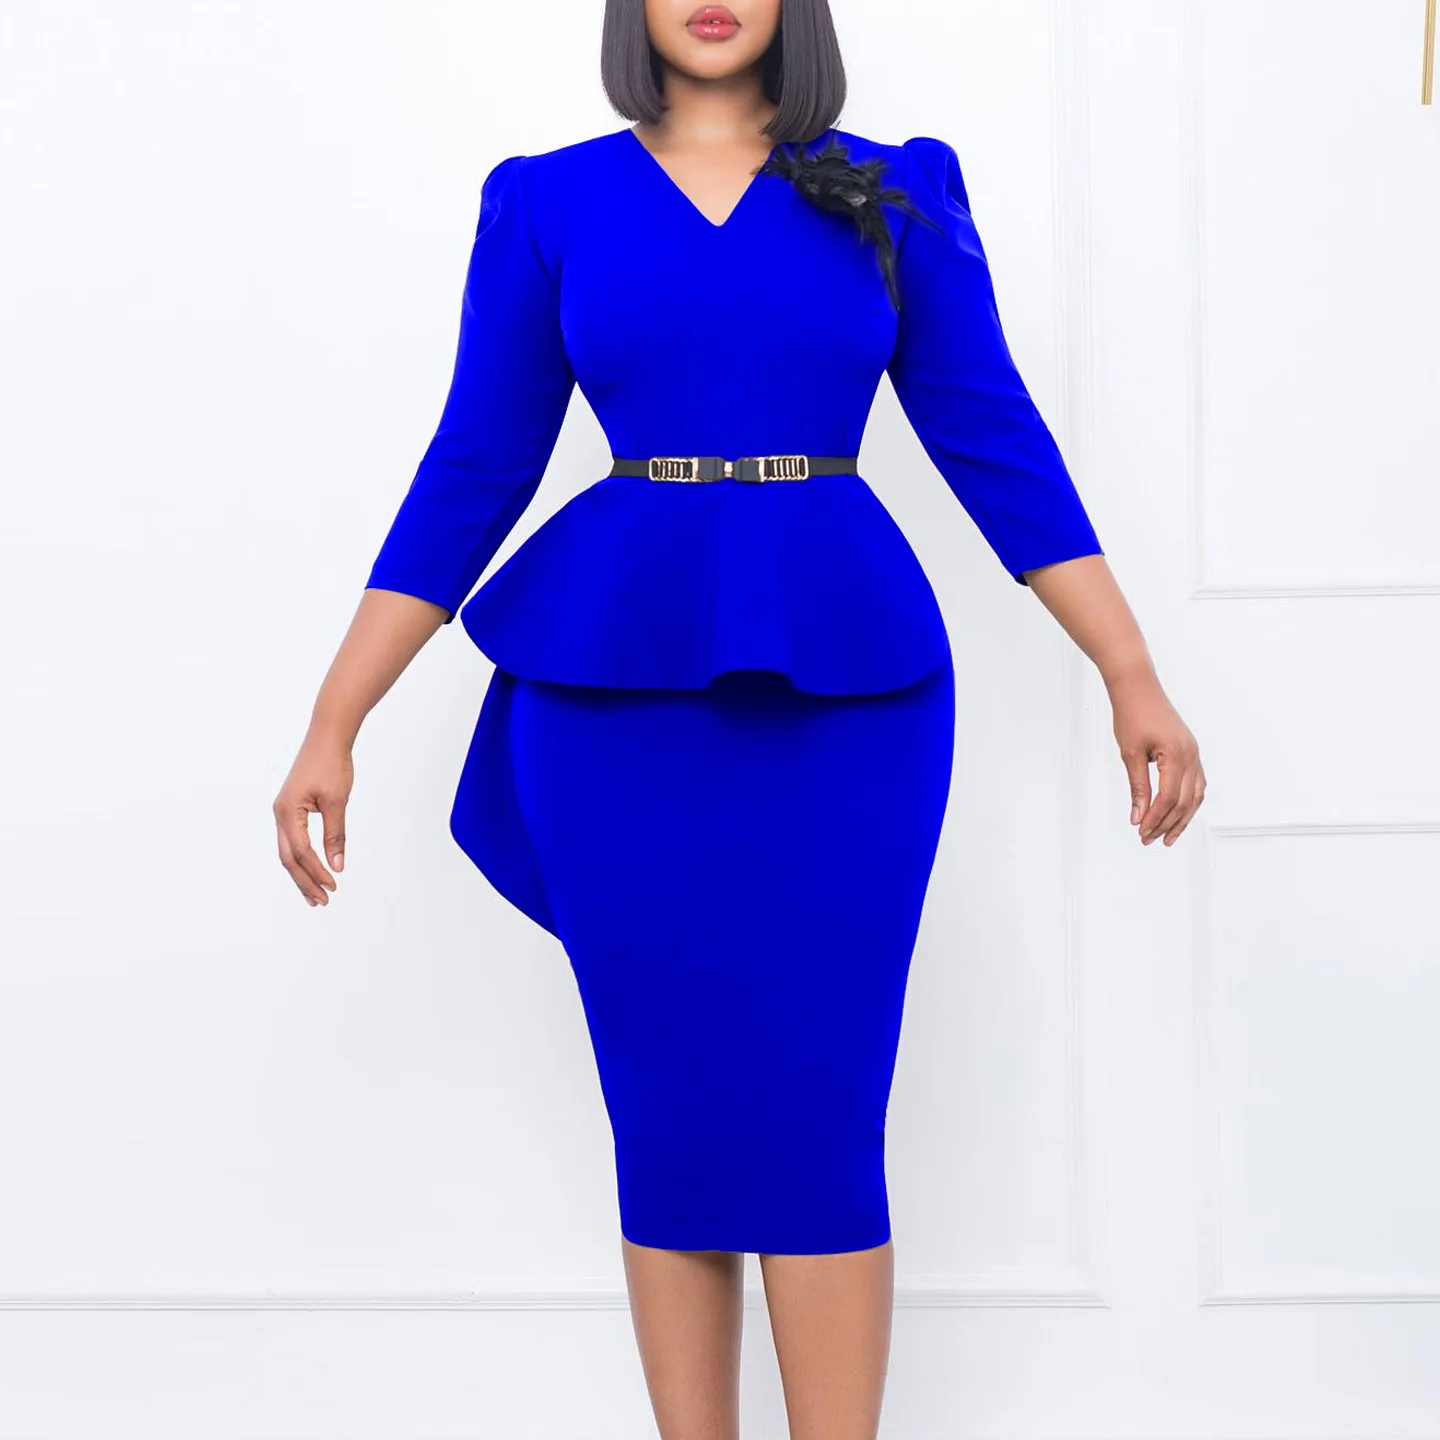 

2023 африканские платья для женщин, летнее Африканское платье с V-образным вырезом и рукавом 3/4 из полиэстера, оранжевое, синее платье длиной до колен, африканская одежда Дашики